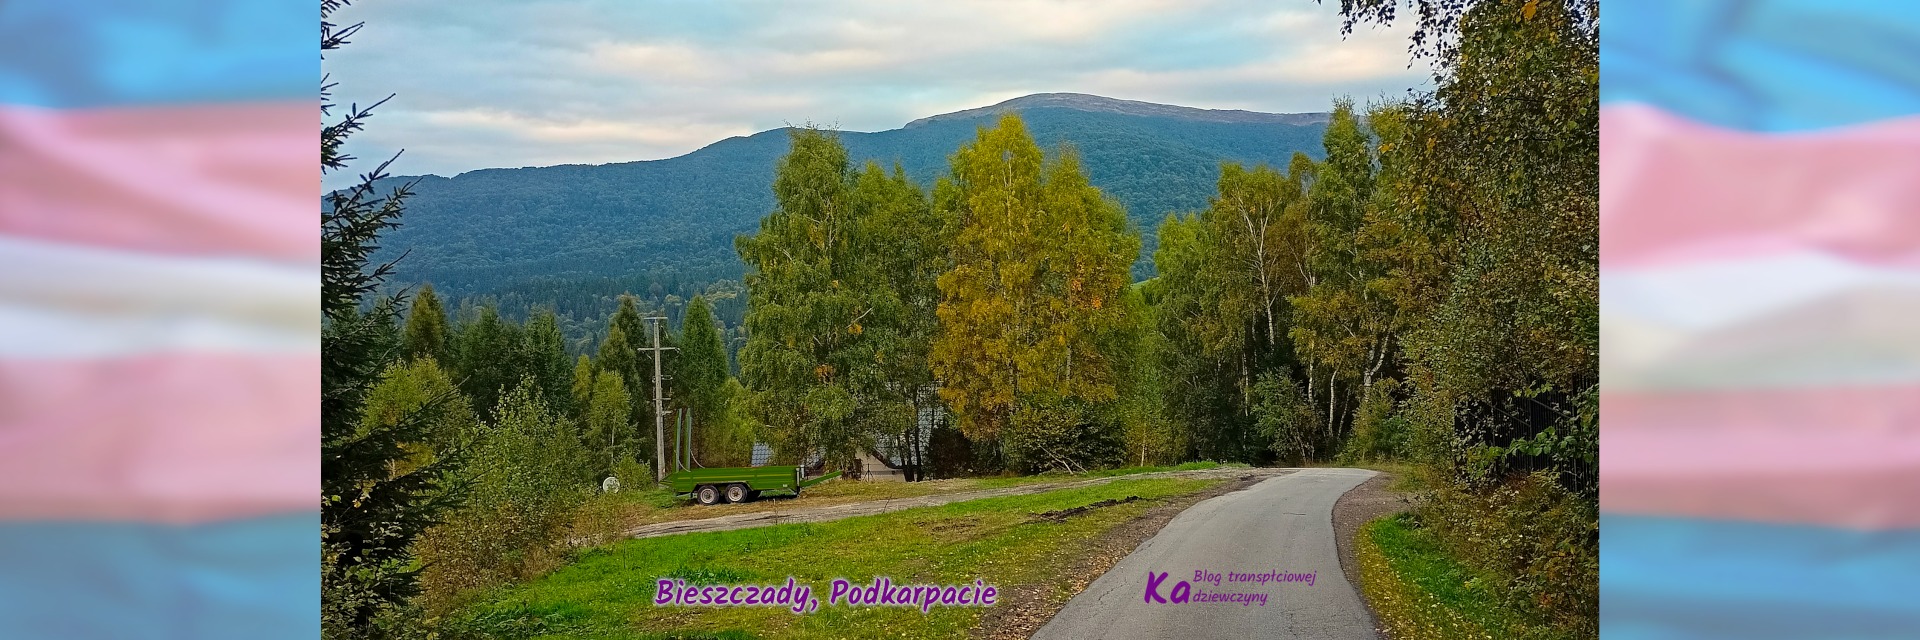 Tranzycja online Leny, zdjęcie pokazuje Bieszczady, widać asfaltową lokalną drogę, za nią drzewa, w tle góry